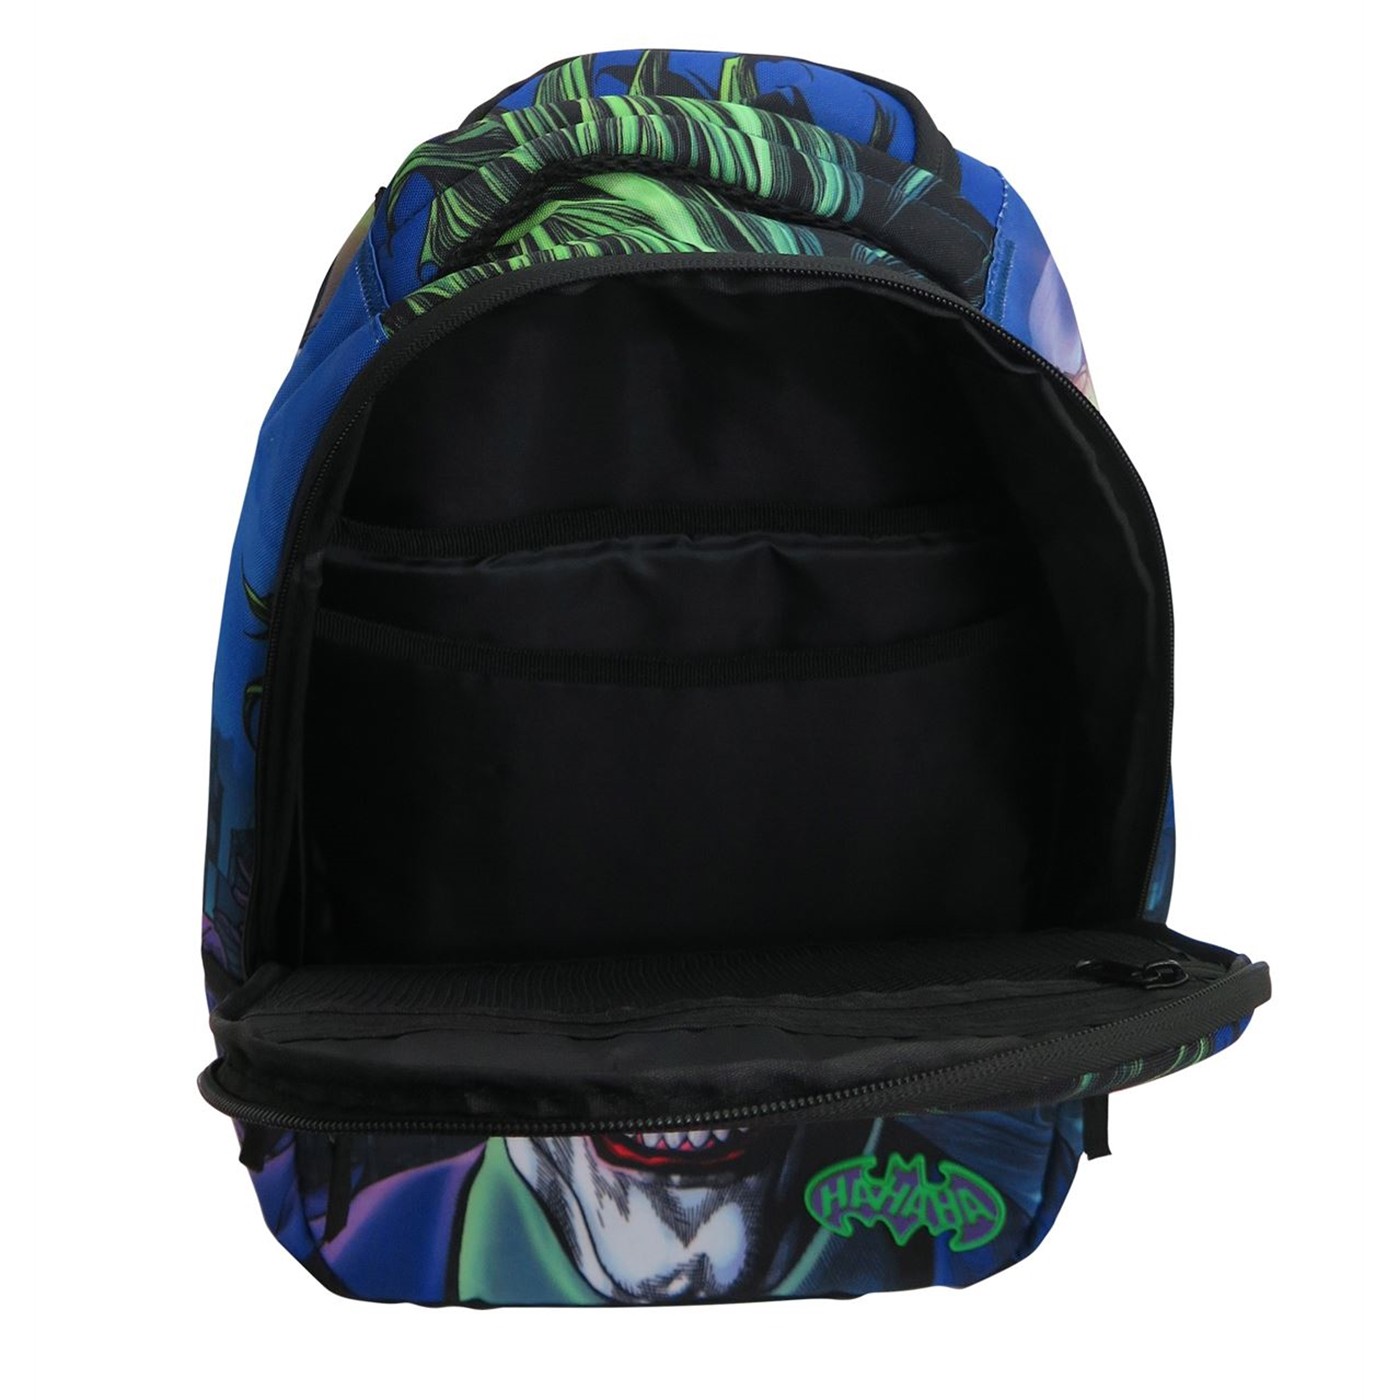 The Joker Molded Laptop Backpack